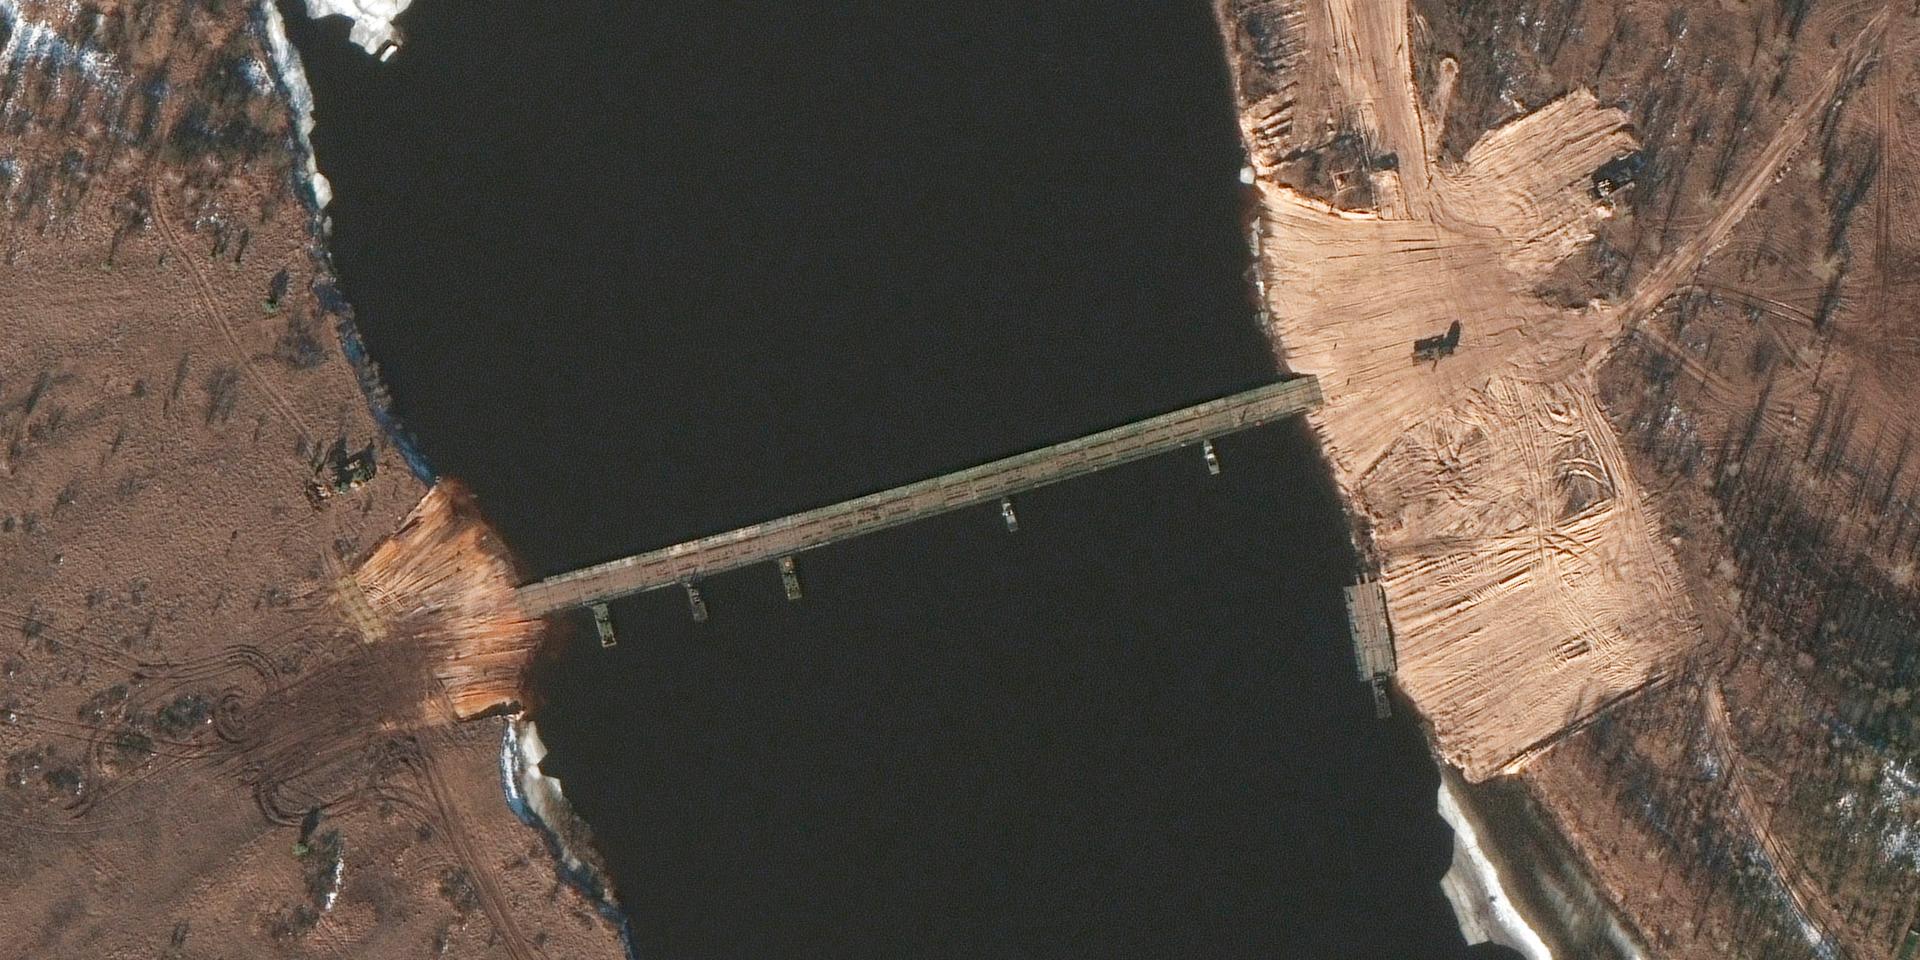 Den nyligen uppförda bron bedöms vara cirka 170-180 meter lång. En pontonbro av detta slag är gjord för att bära uppemot 60 ton, och kan sättas upp på mycket kort tid. 